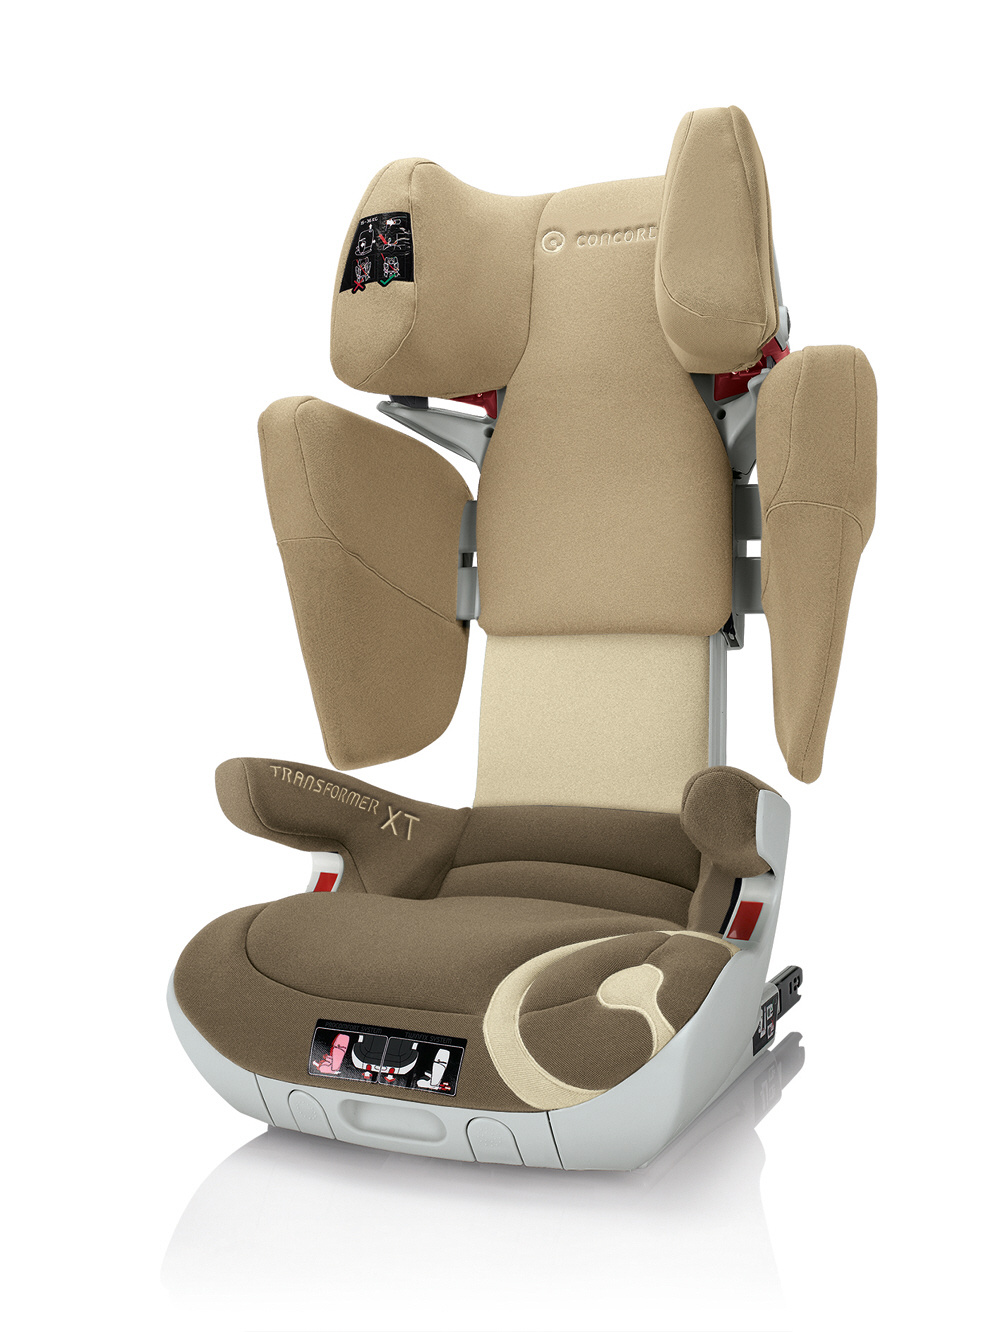 Concord 康科德 汽车儿童安全座椅变形金刚 XT  多色可选